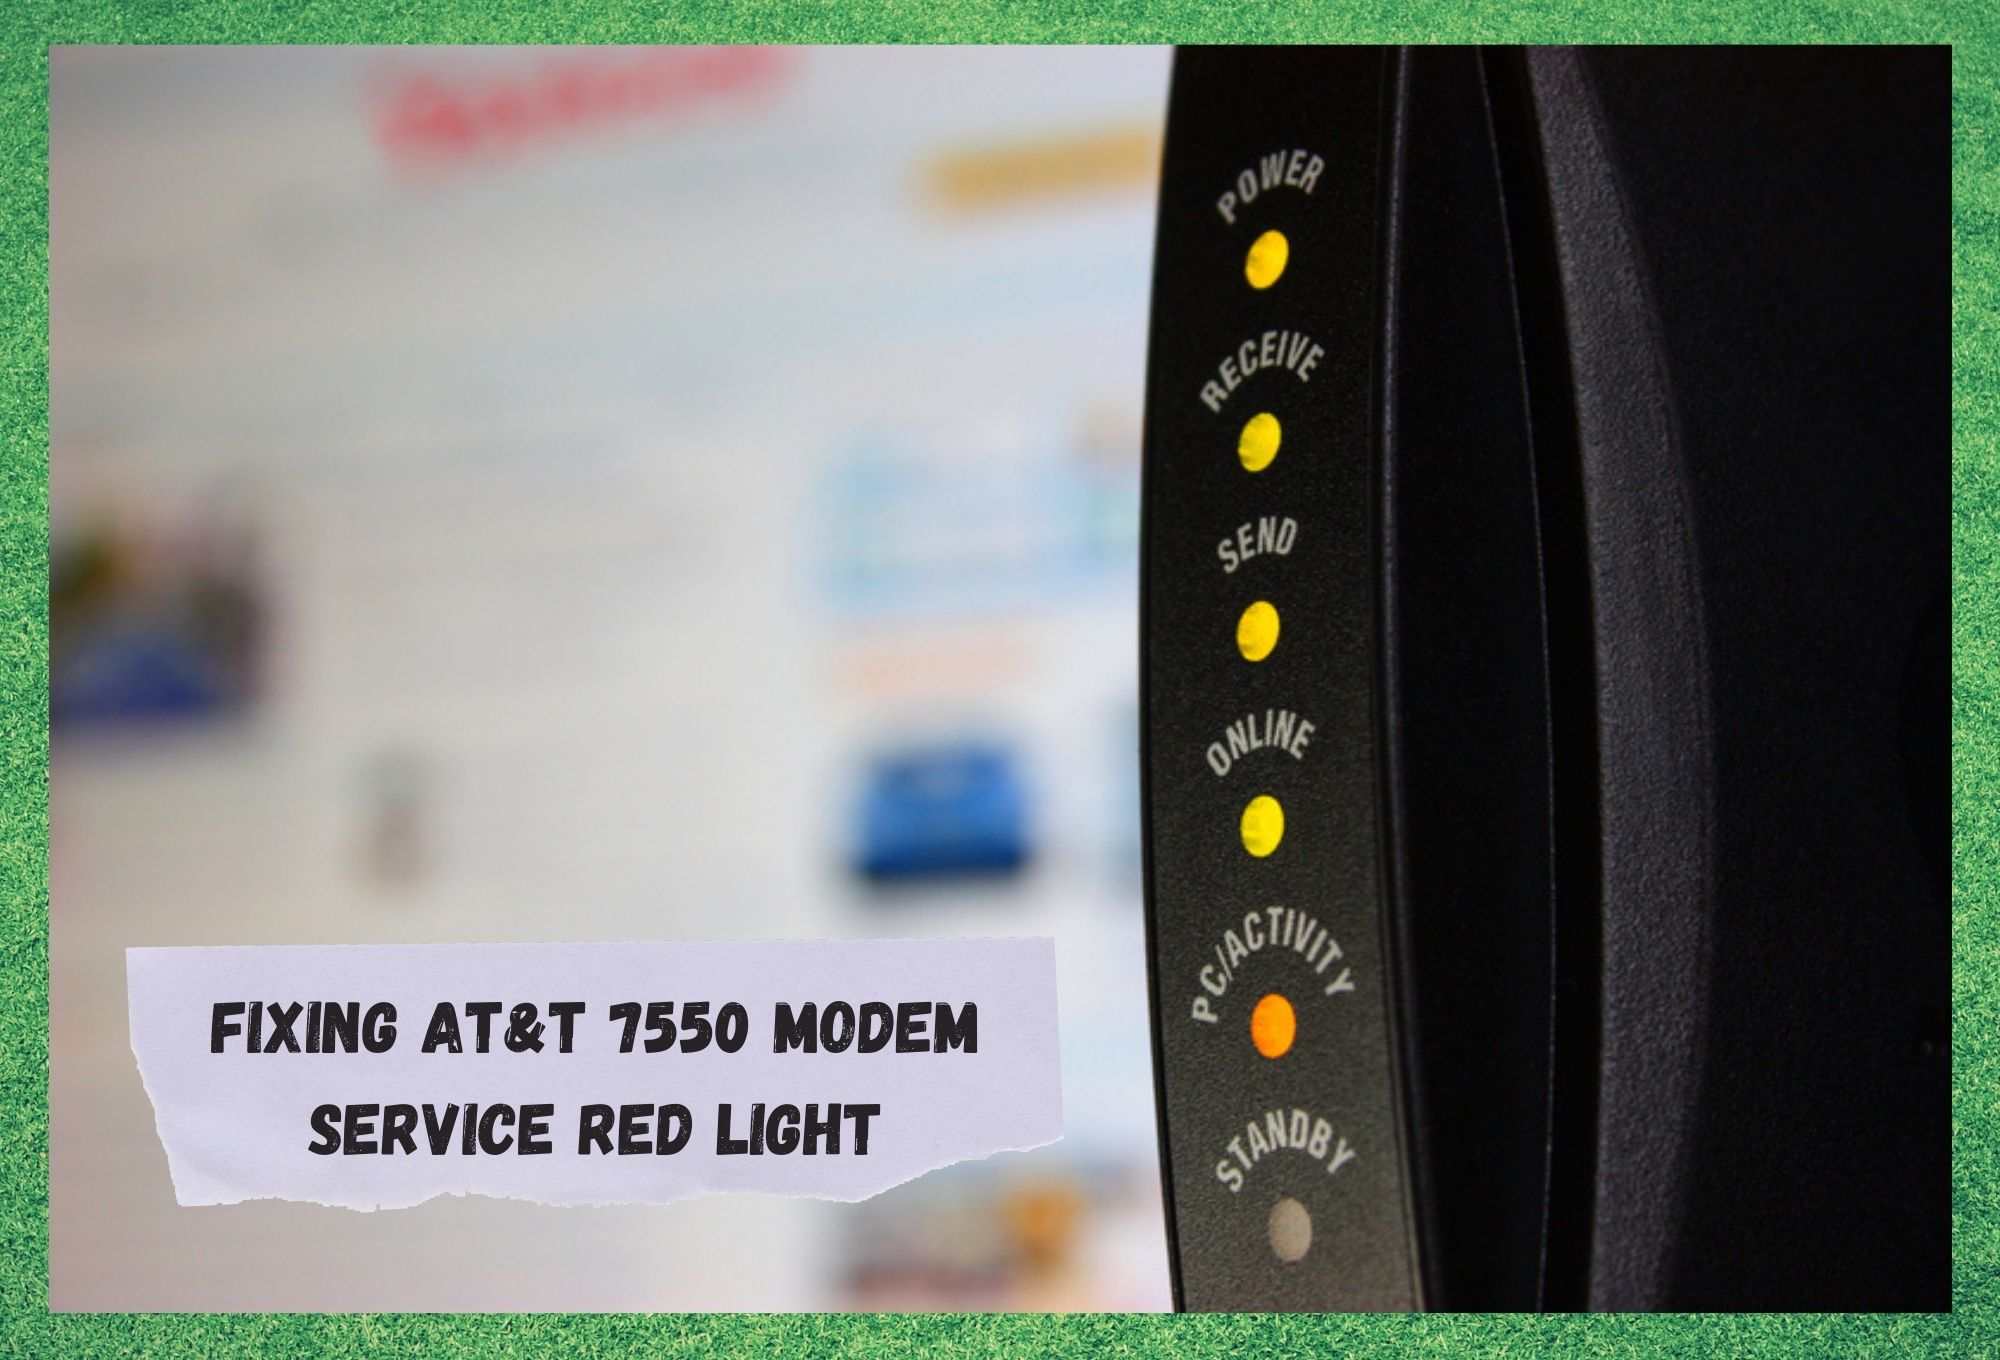 att 7550 modem service light red